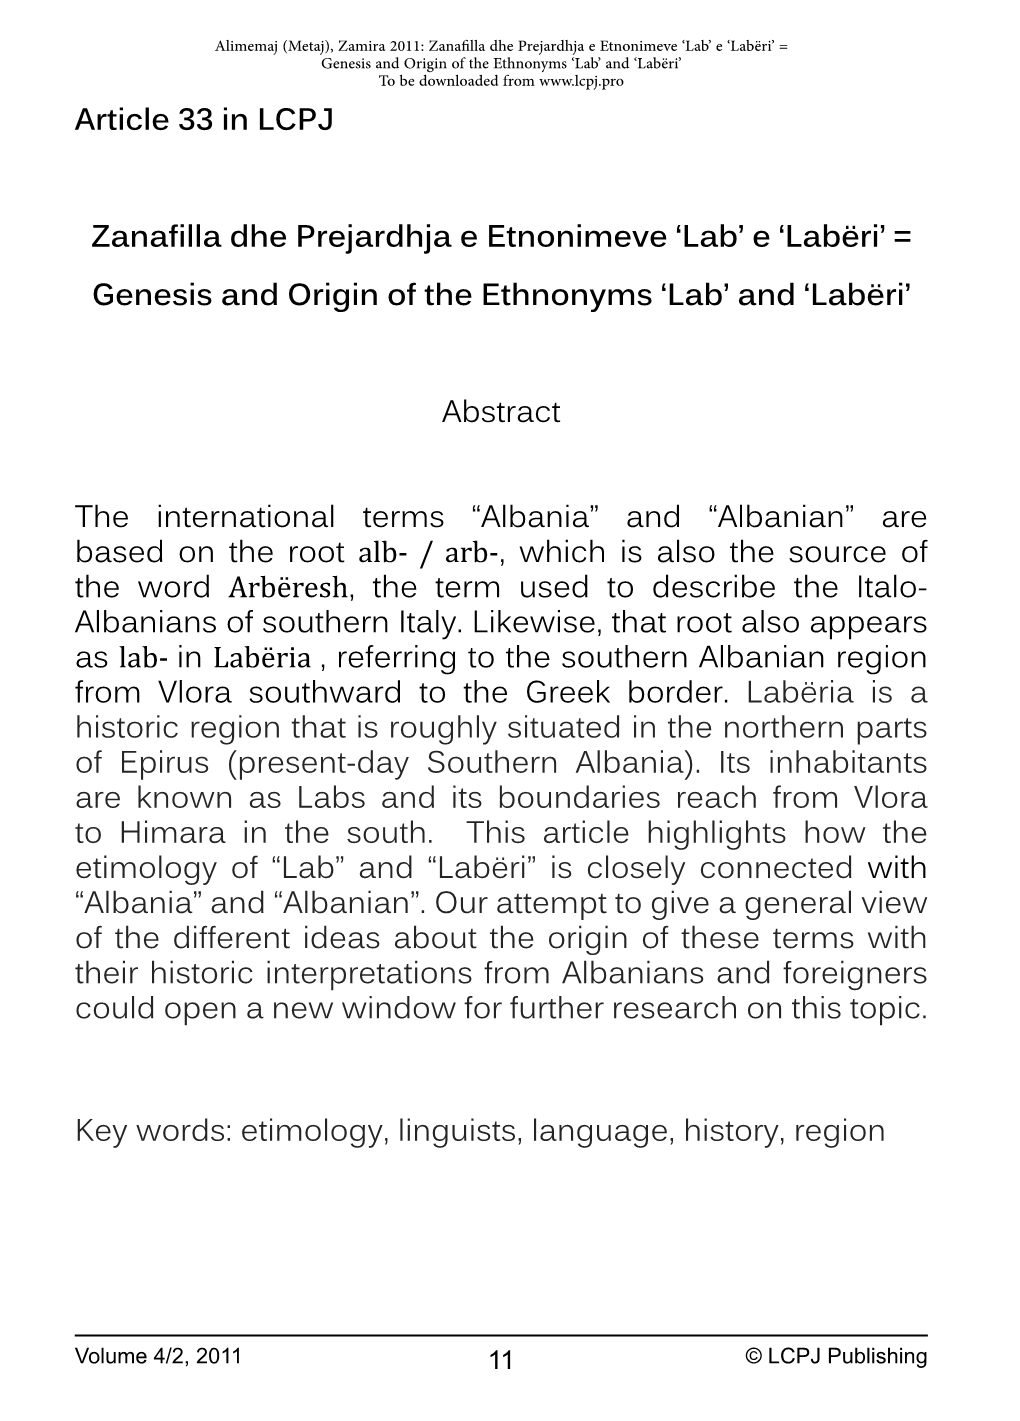 Article 33 in Lcpj Zanafilla Dhe Prejardhja E Etnonimeve 'Lab' E 'Labëri' = Genesis and Origin of the Ethnonyms 'Lab